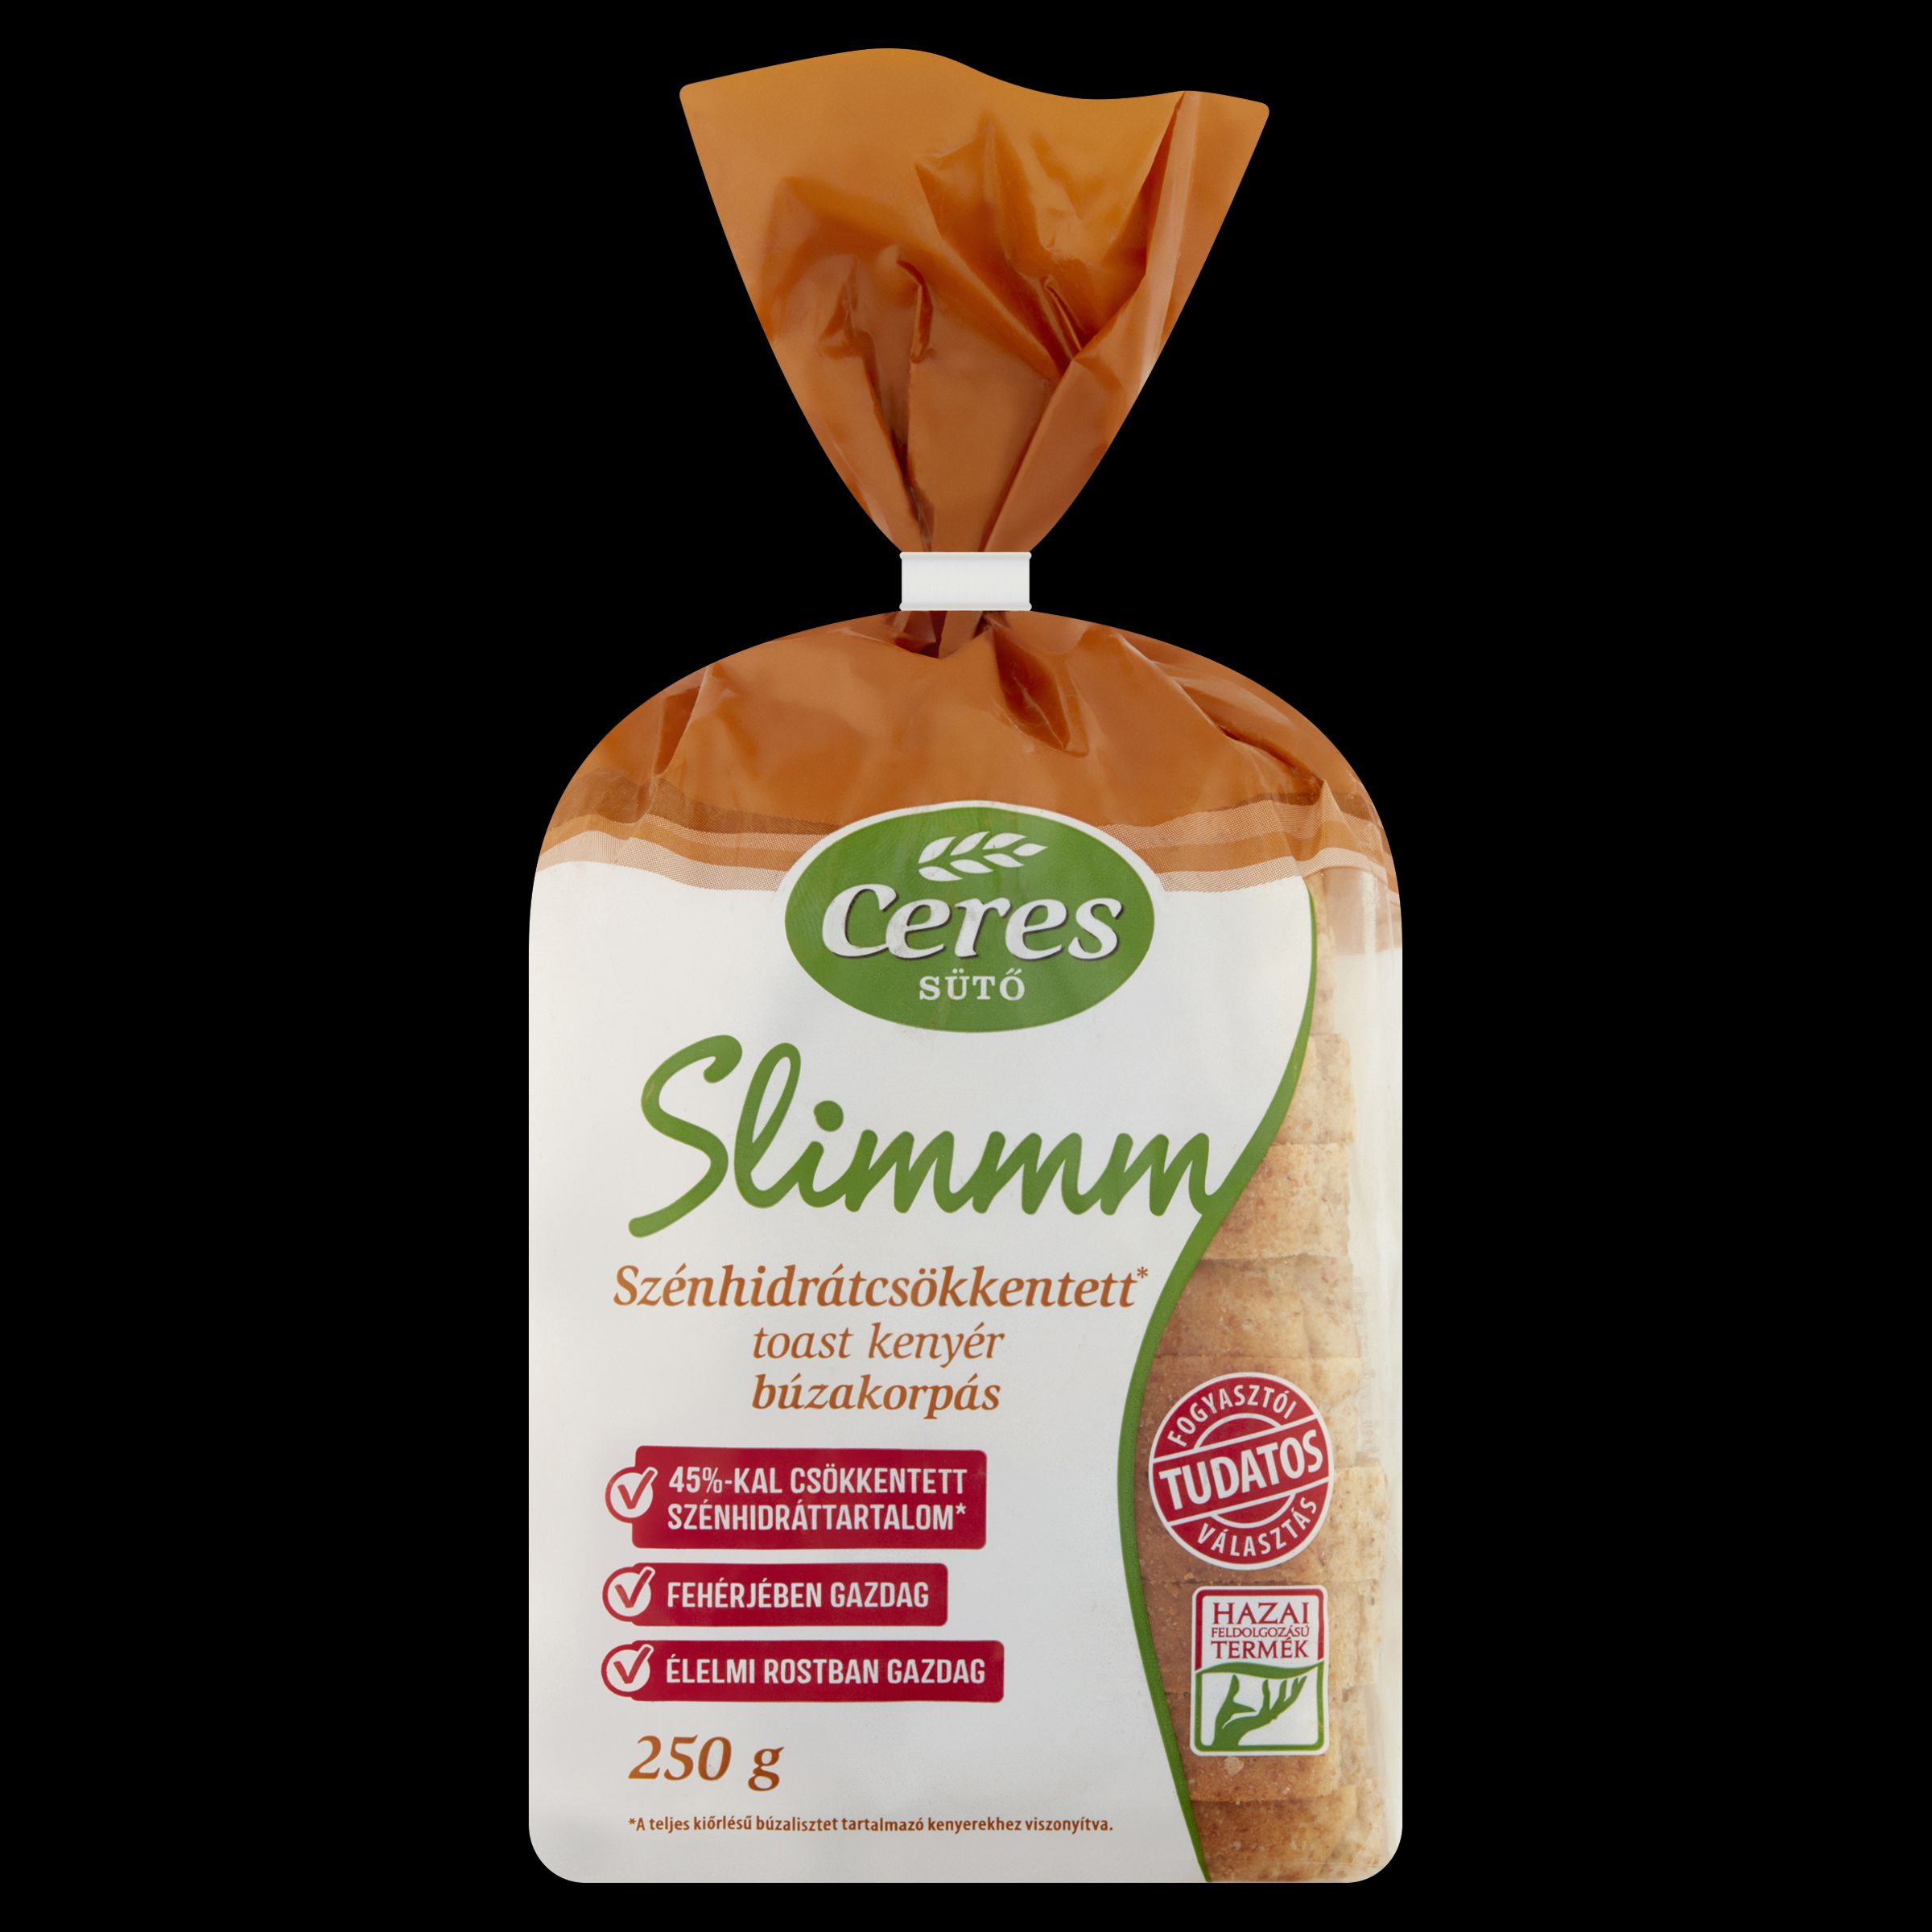 Slimmm búzakorpás toast kenyér 250